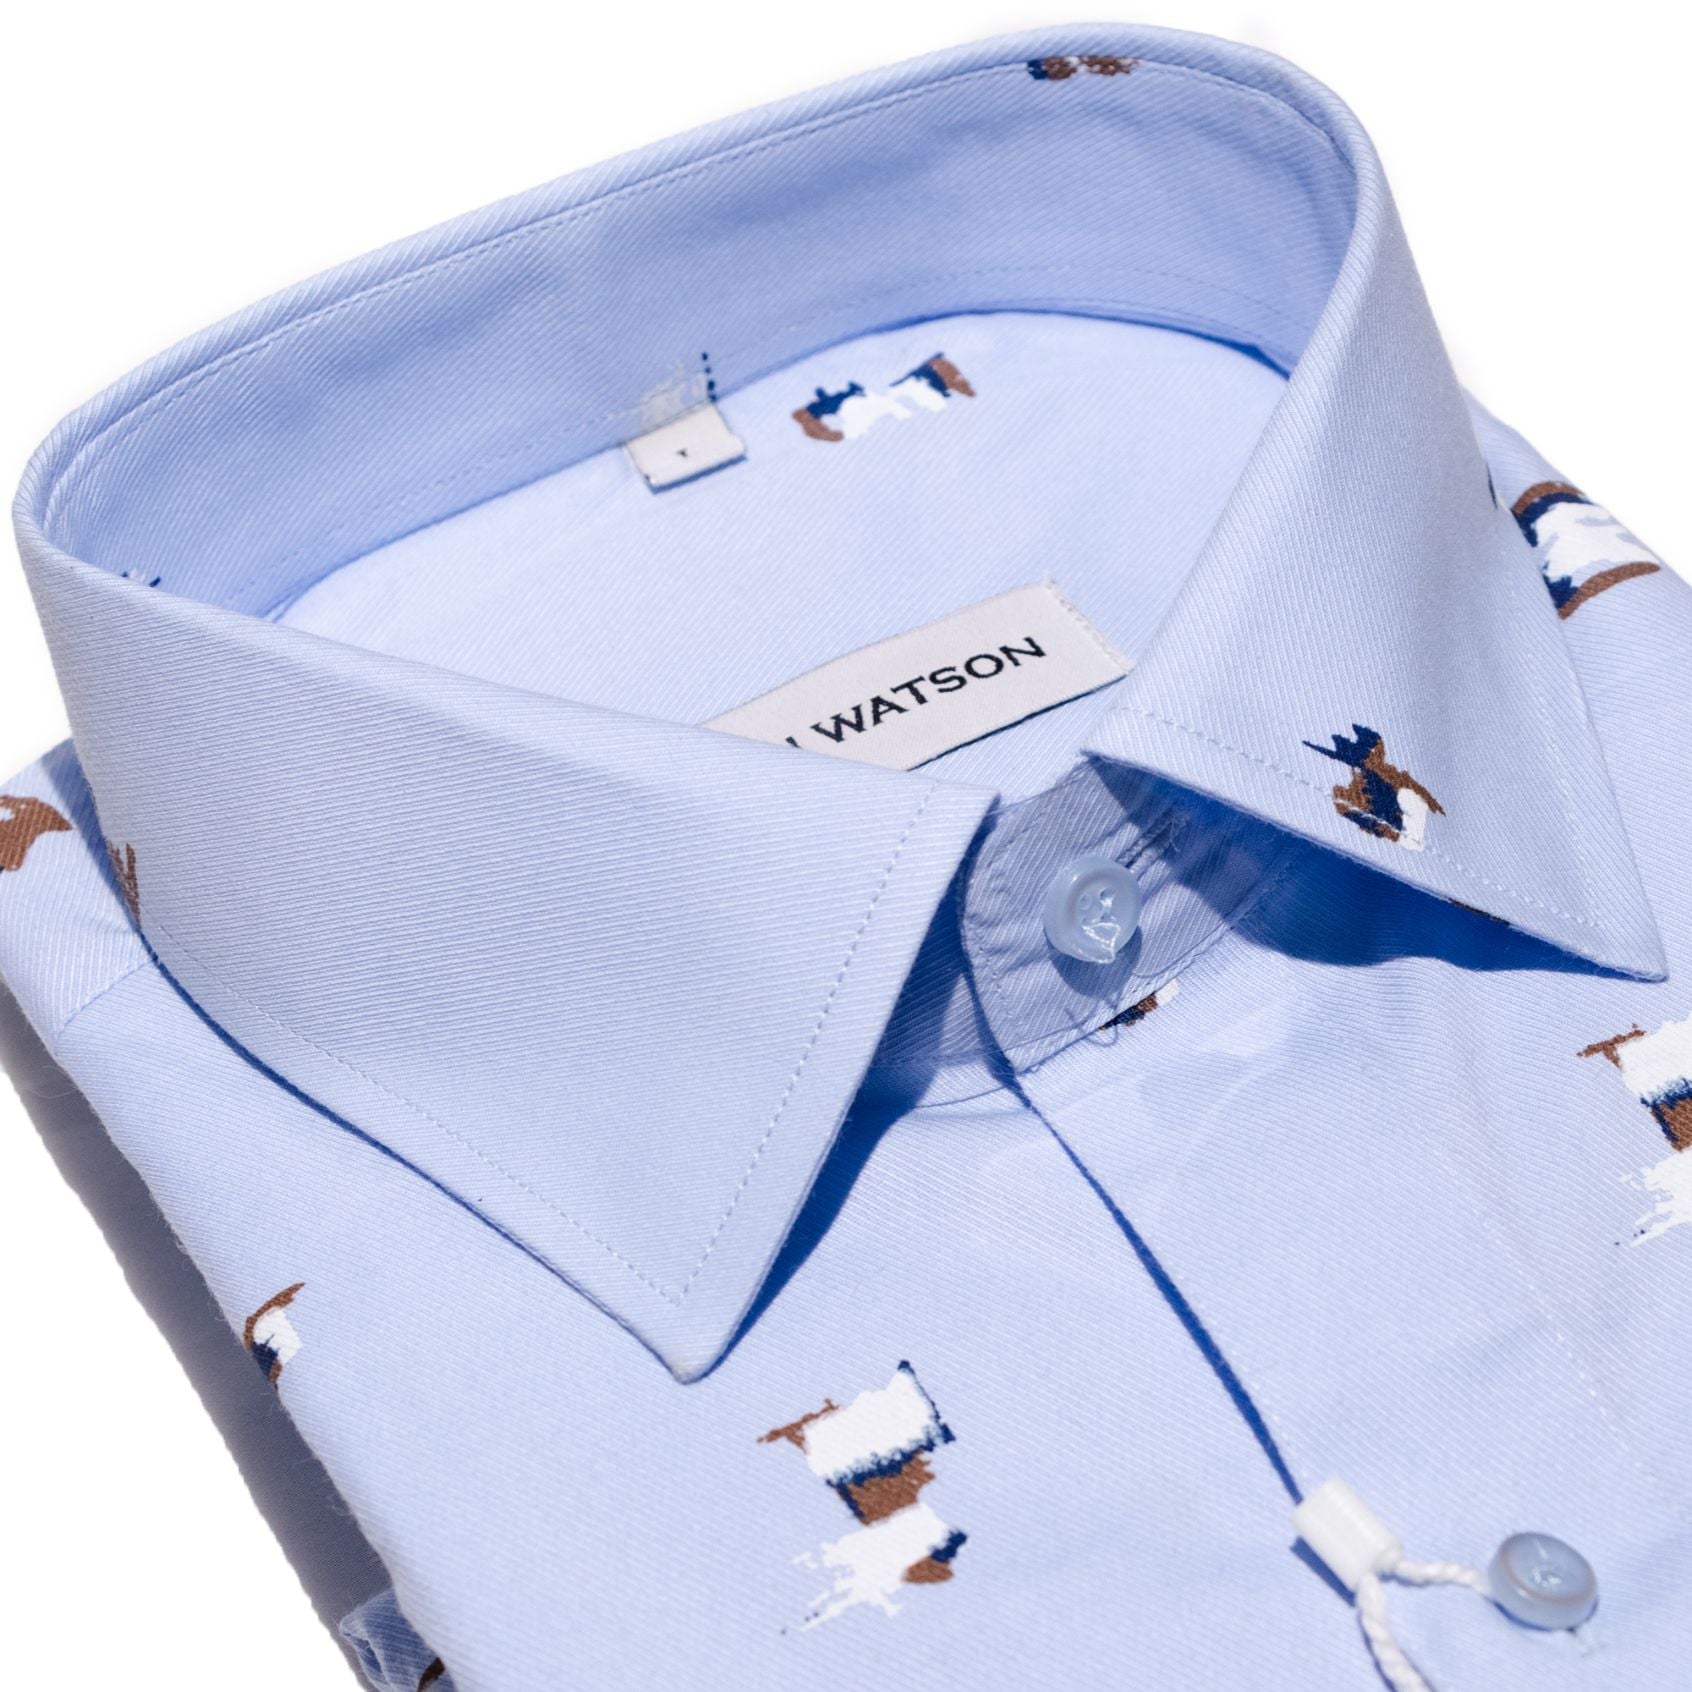 Frigate - Printed twill Shirt- Blue - John Watson